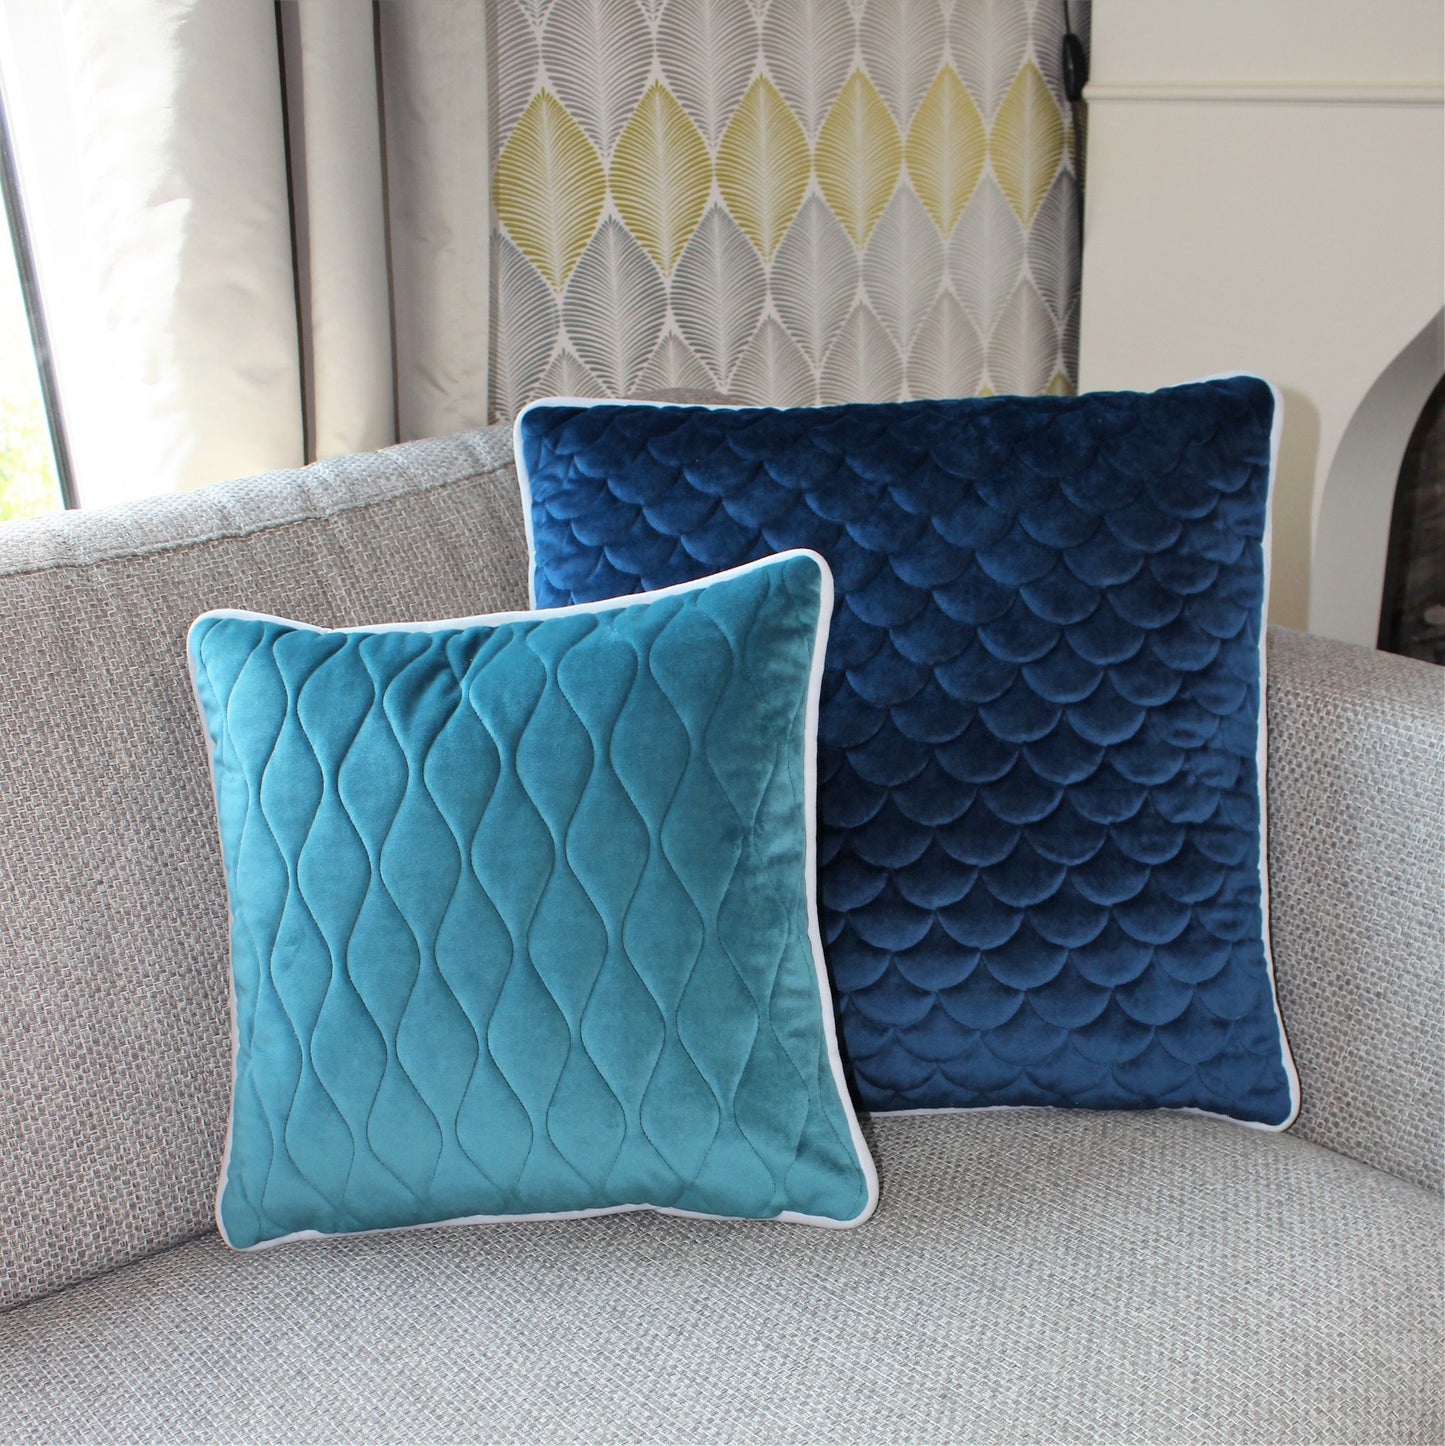 türkises und blaues Kissen auf Sofa als Sofakissen dekoriert